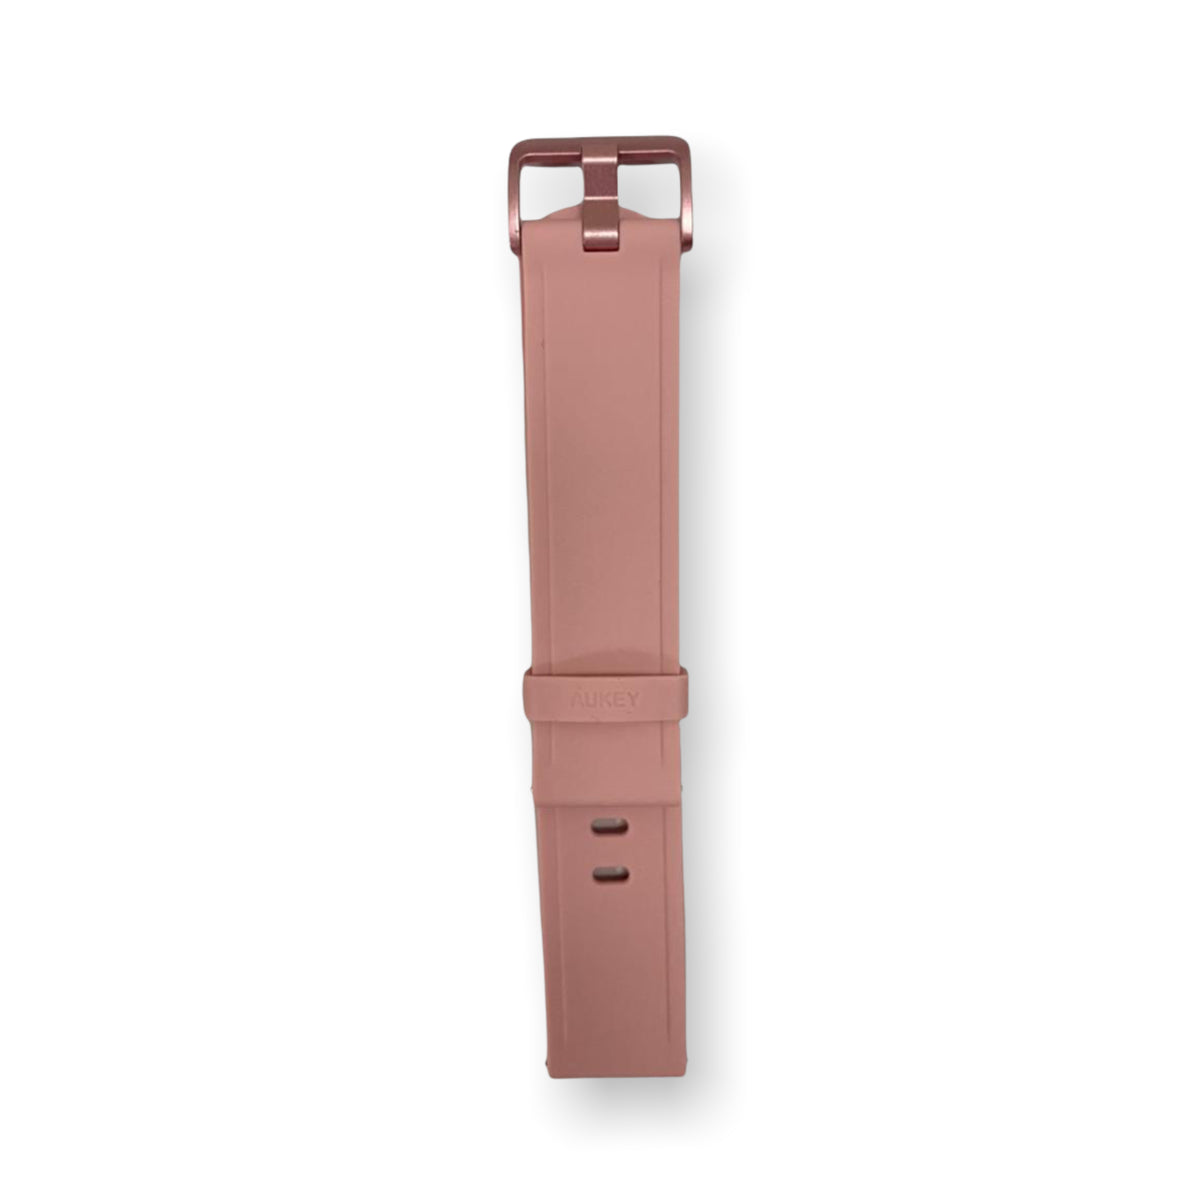 Accesorio aukey pulsera para ls02 color rosado